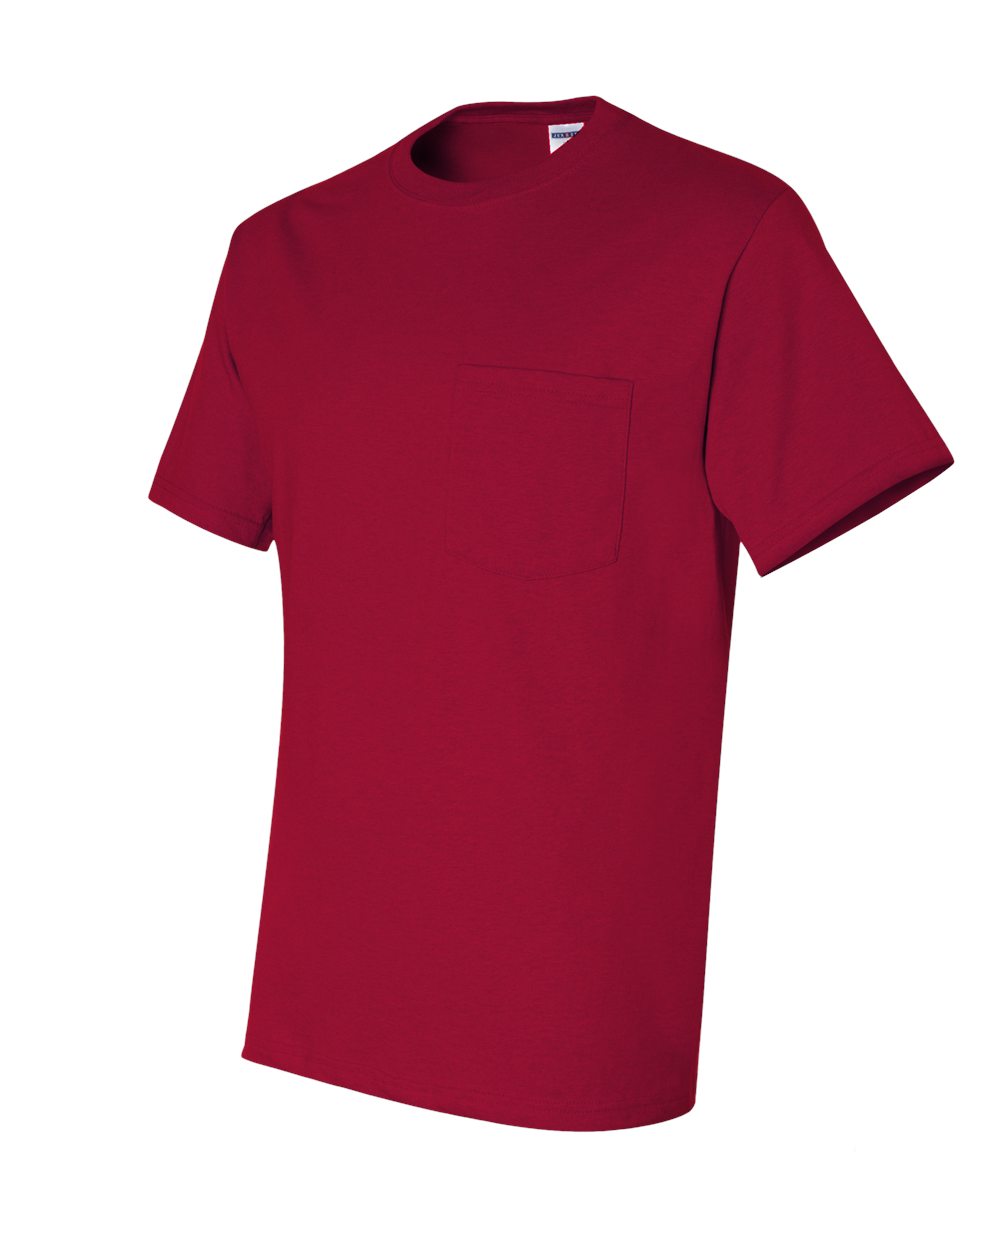 Jerzees 29MPR - Heavyweight Blend 50/50 T-Shirt with a Pocket